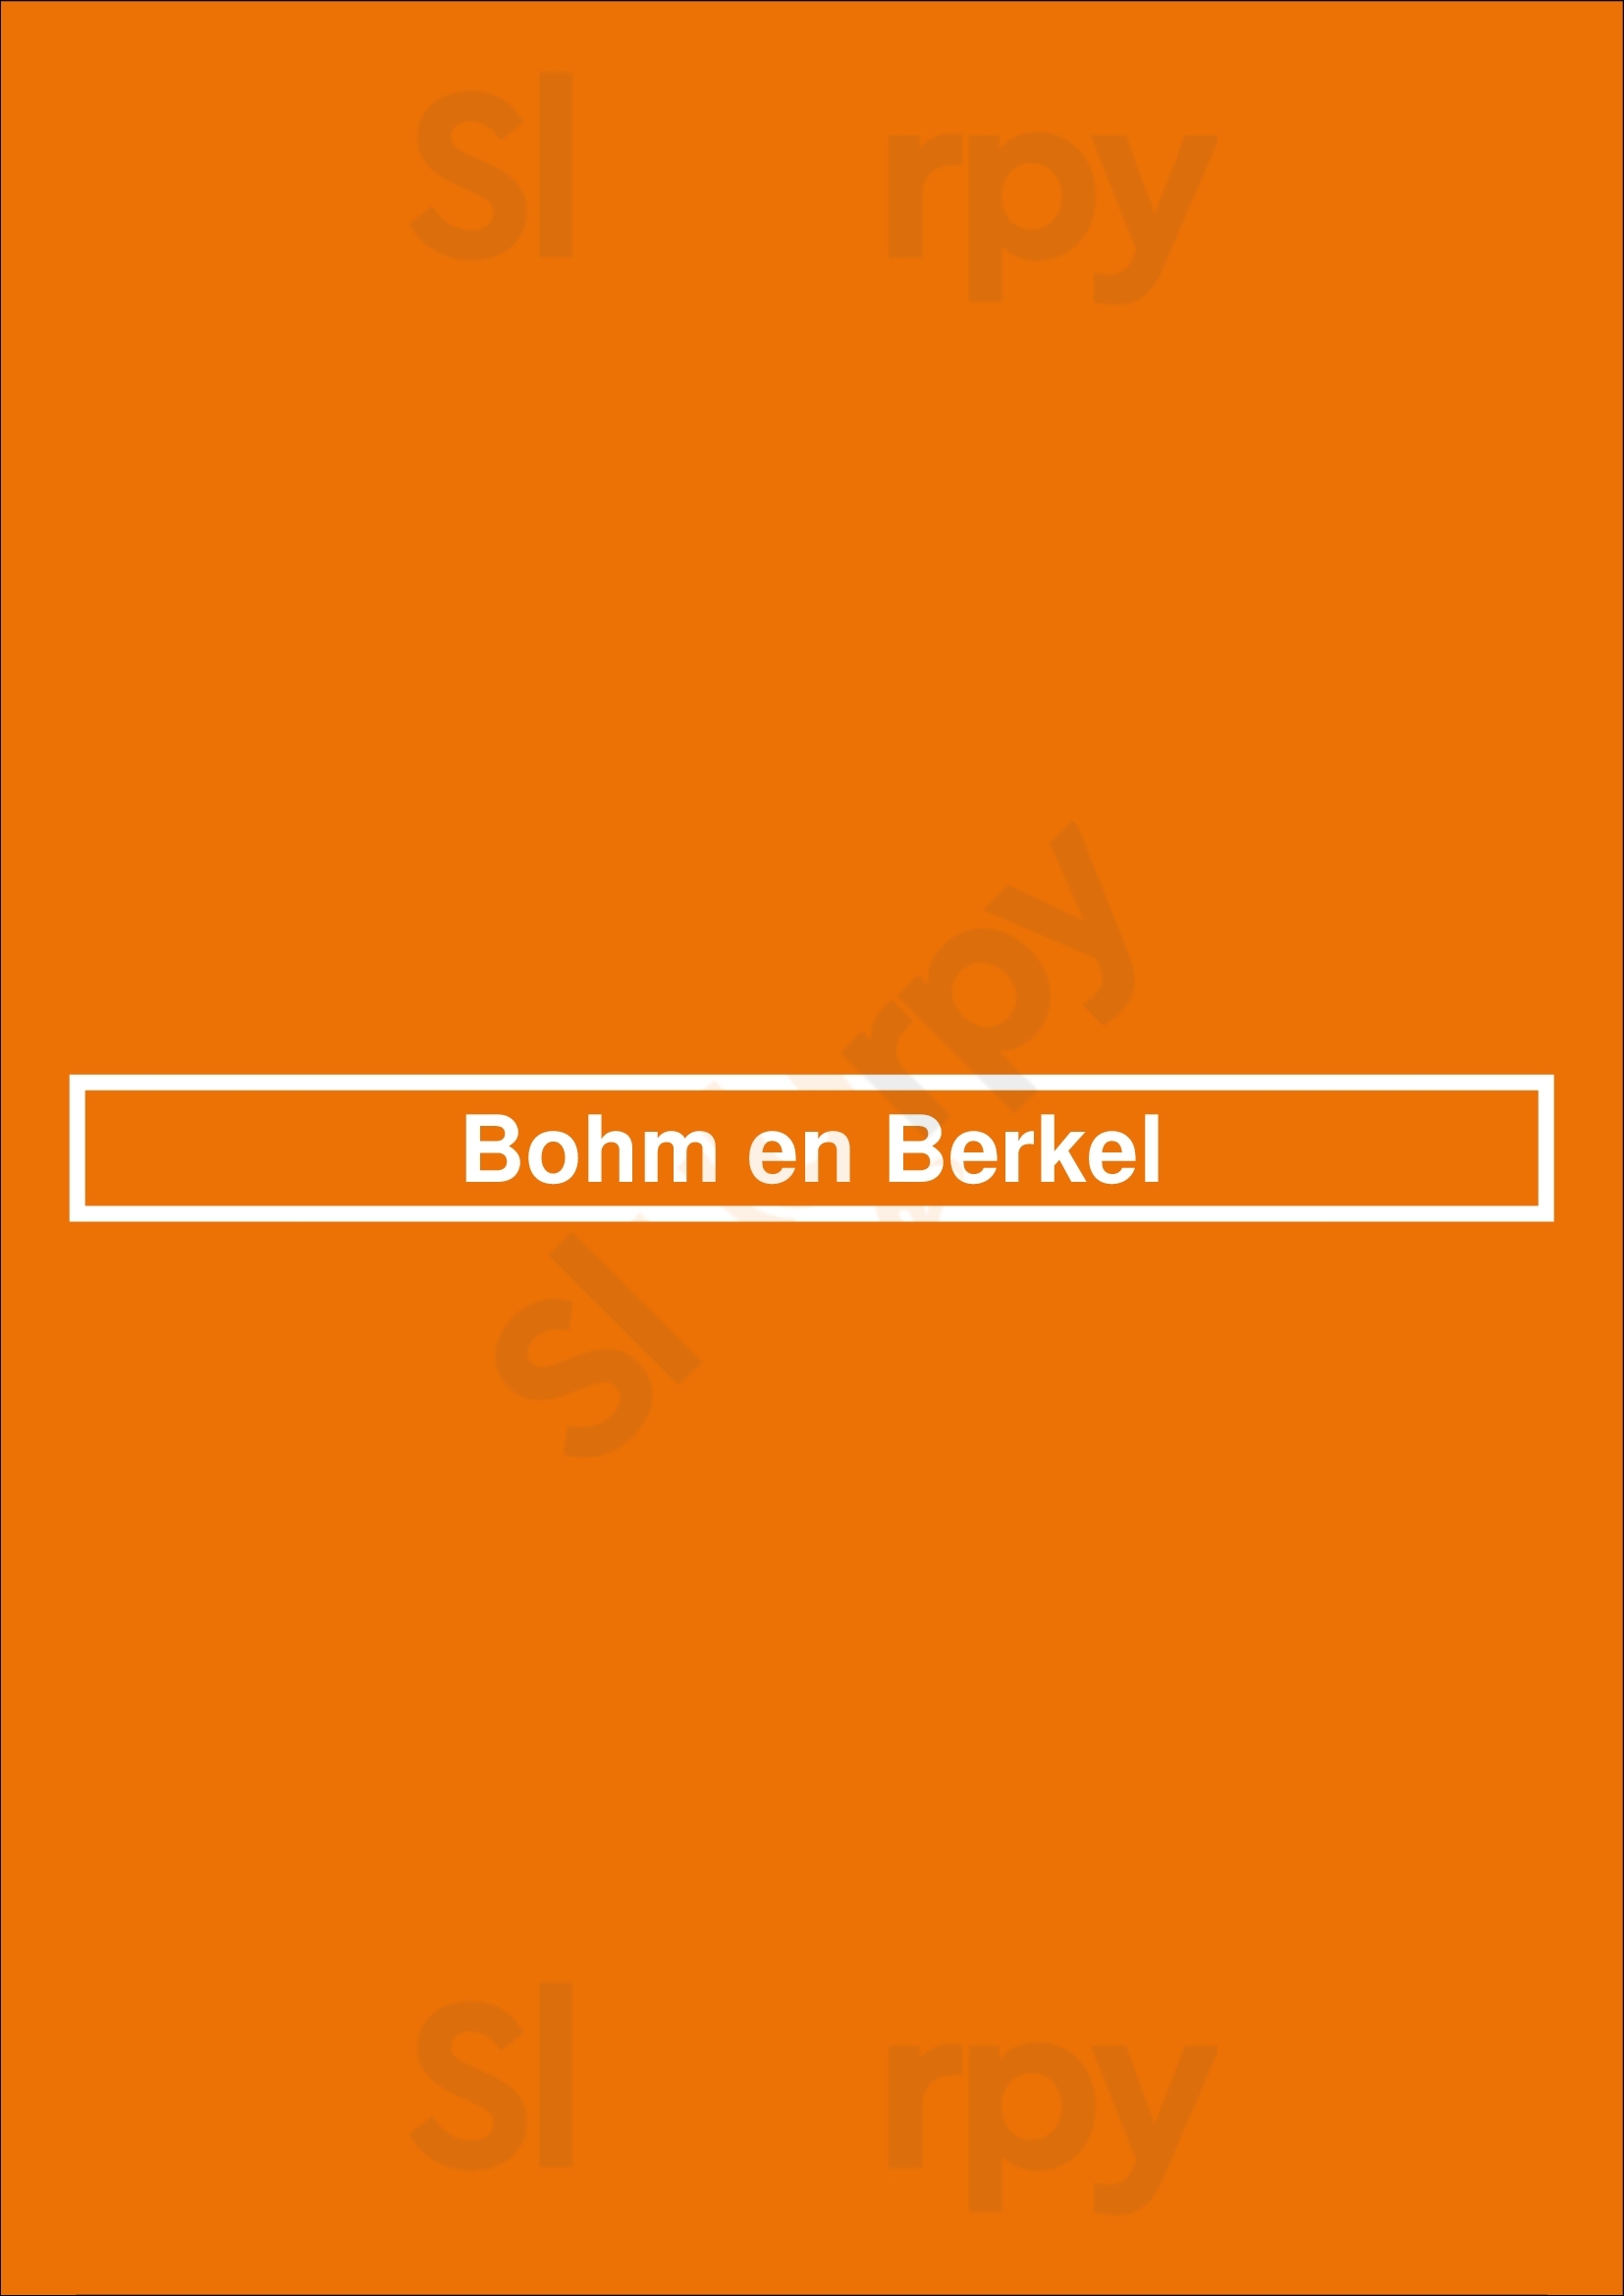 Bohm En Berkel Anvers Menu - 1